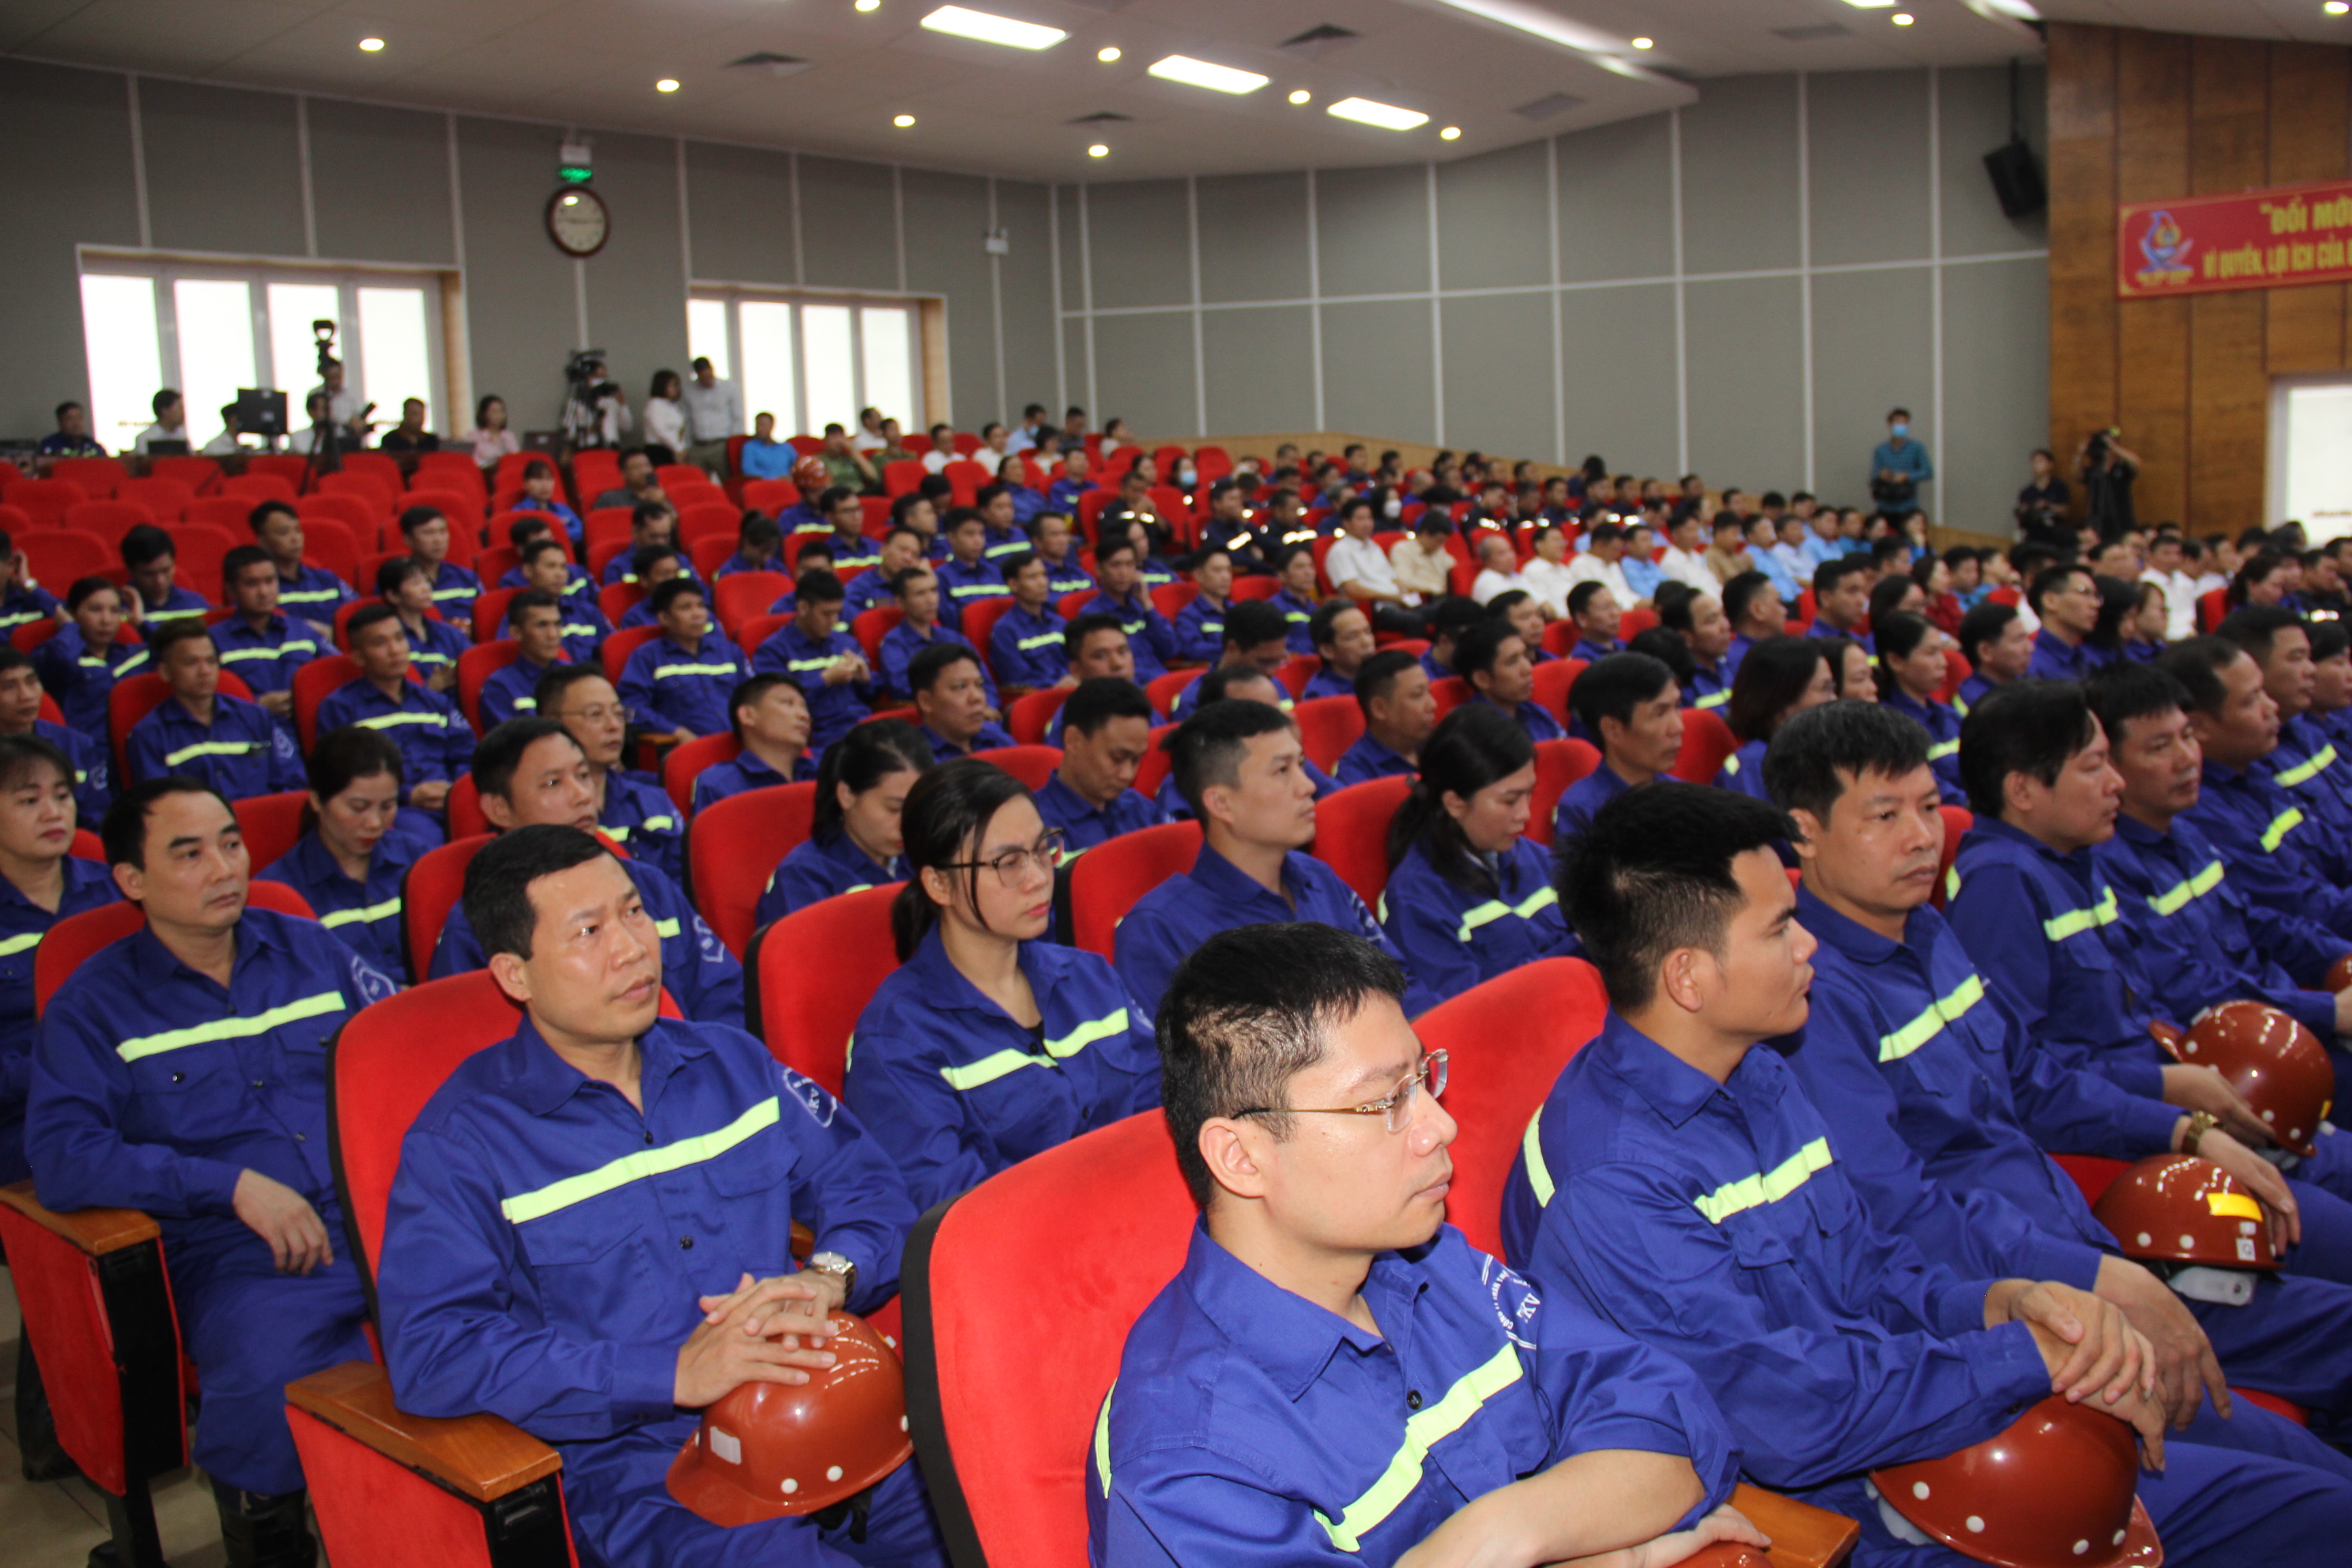 Đội ngũ công nhân lao động ngành Than có vai trò và đóng góp quan trọng đối với sự phát triển kinh tế - xã hội của tỉnh Quảng Ninh và đất nước - Ảnh 3